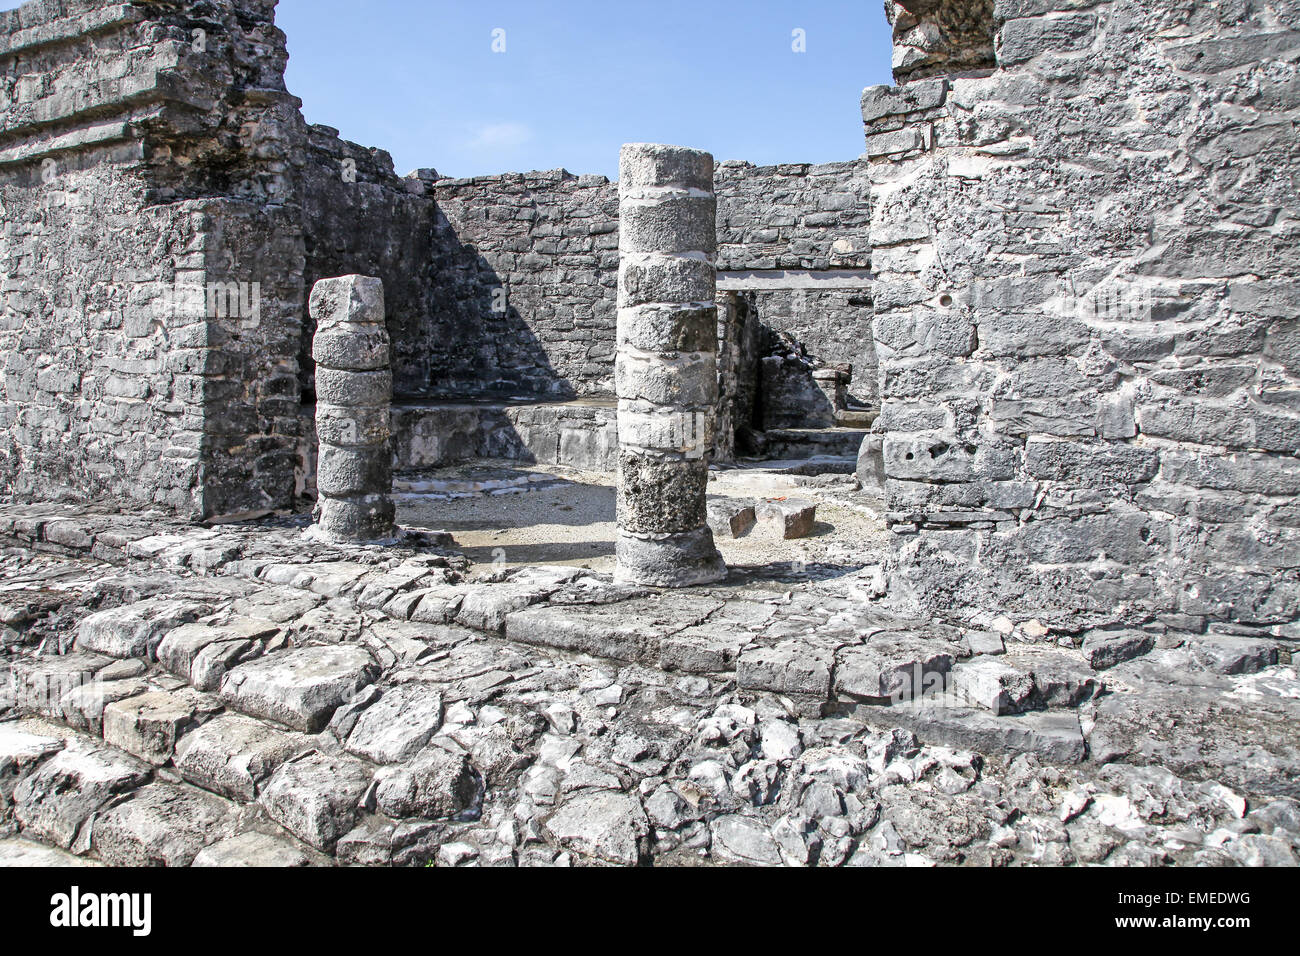 Tulum, rovine del sito di un precolombiana Maya la civiltà Maya città murata Yucatán Penisola, Quintana Roo, Messico Foto Stock